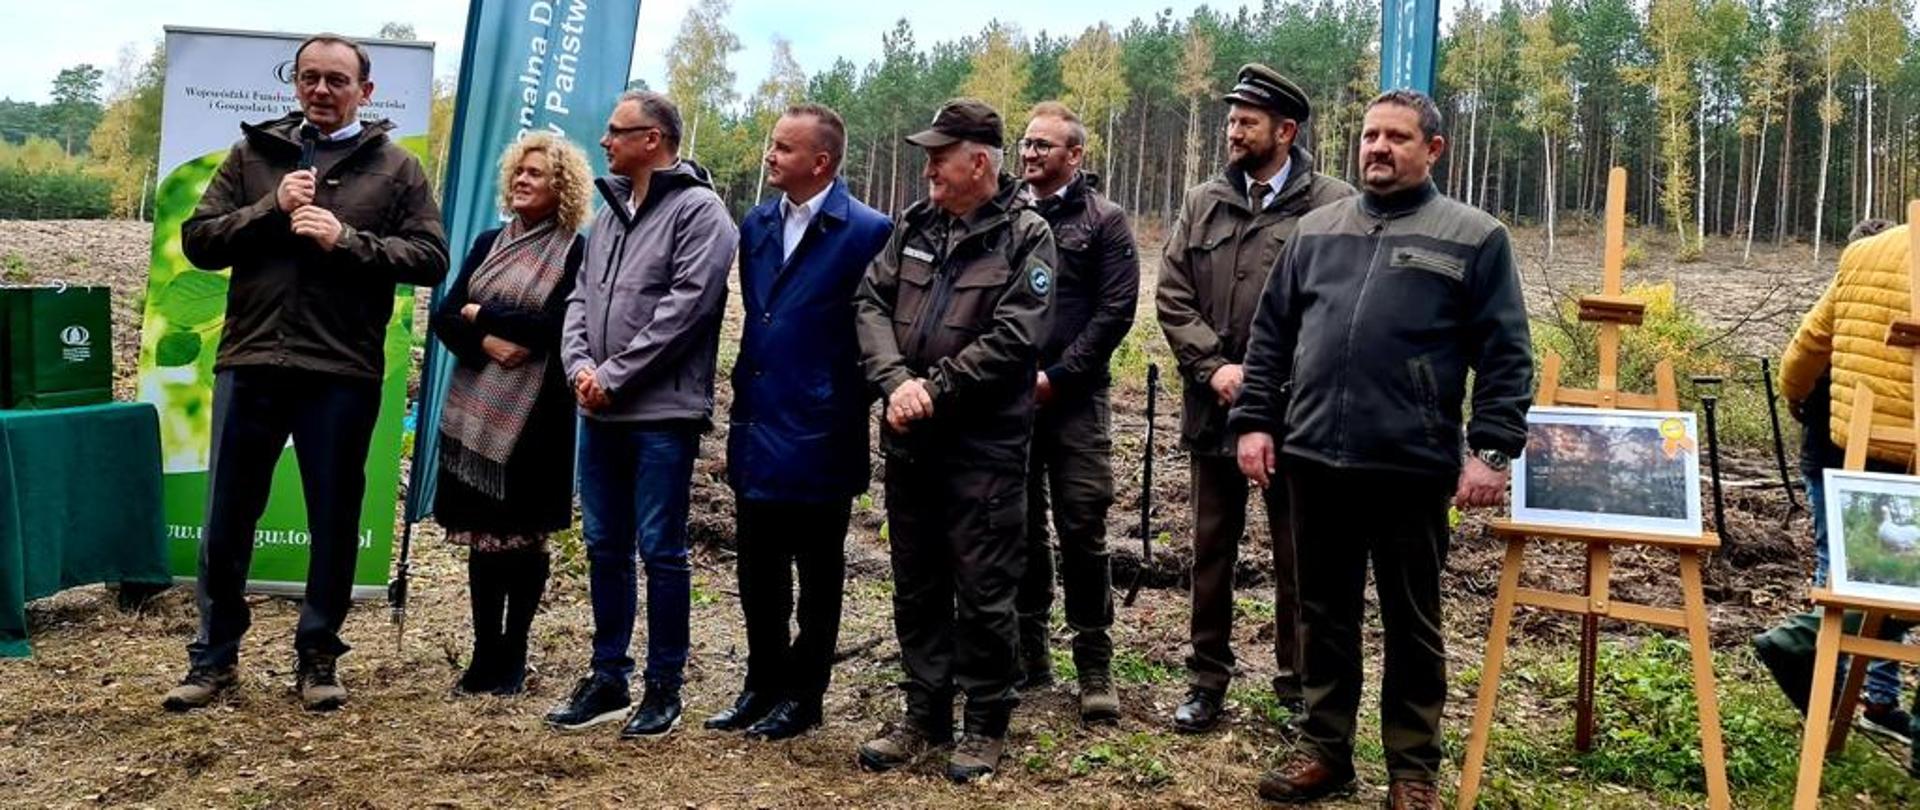 Wiceminister Edward Siarka wziął udział w akcji sadzenia drzew z przedstawicielami Wojewódzkiego Funduszu Ochrony Środowiska i Gospodarki Wodnej w Toruniu